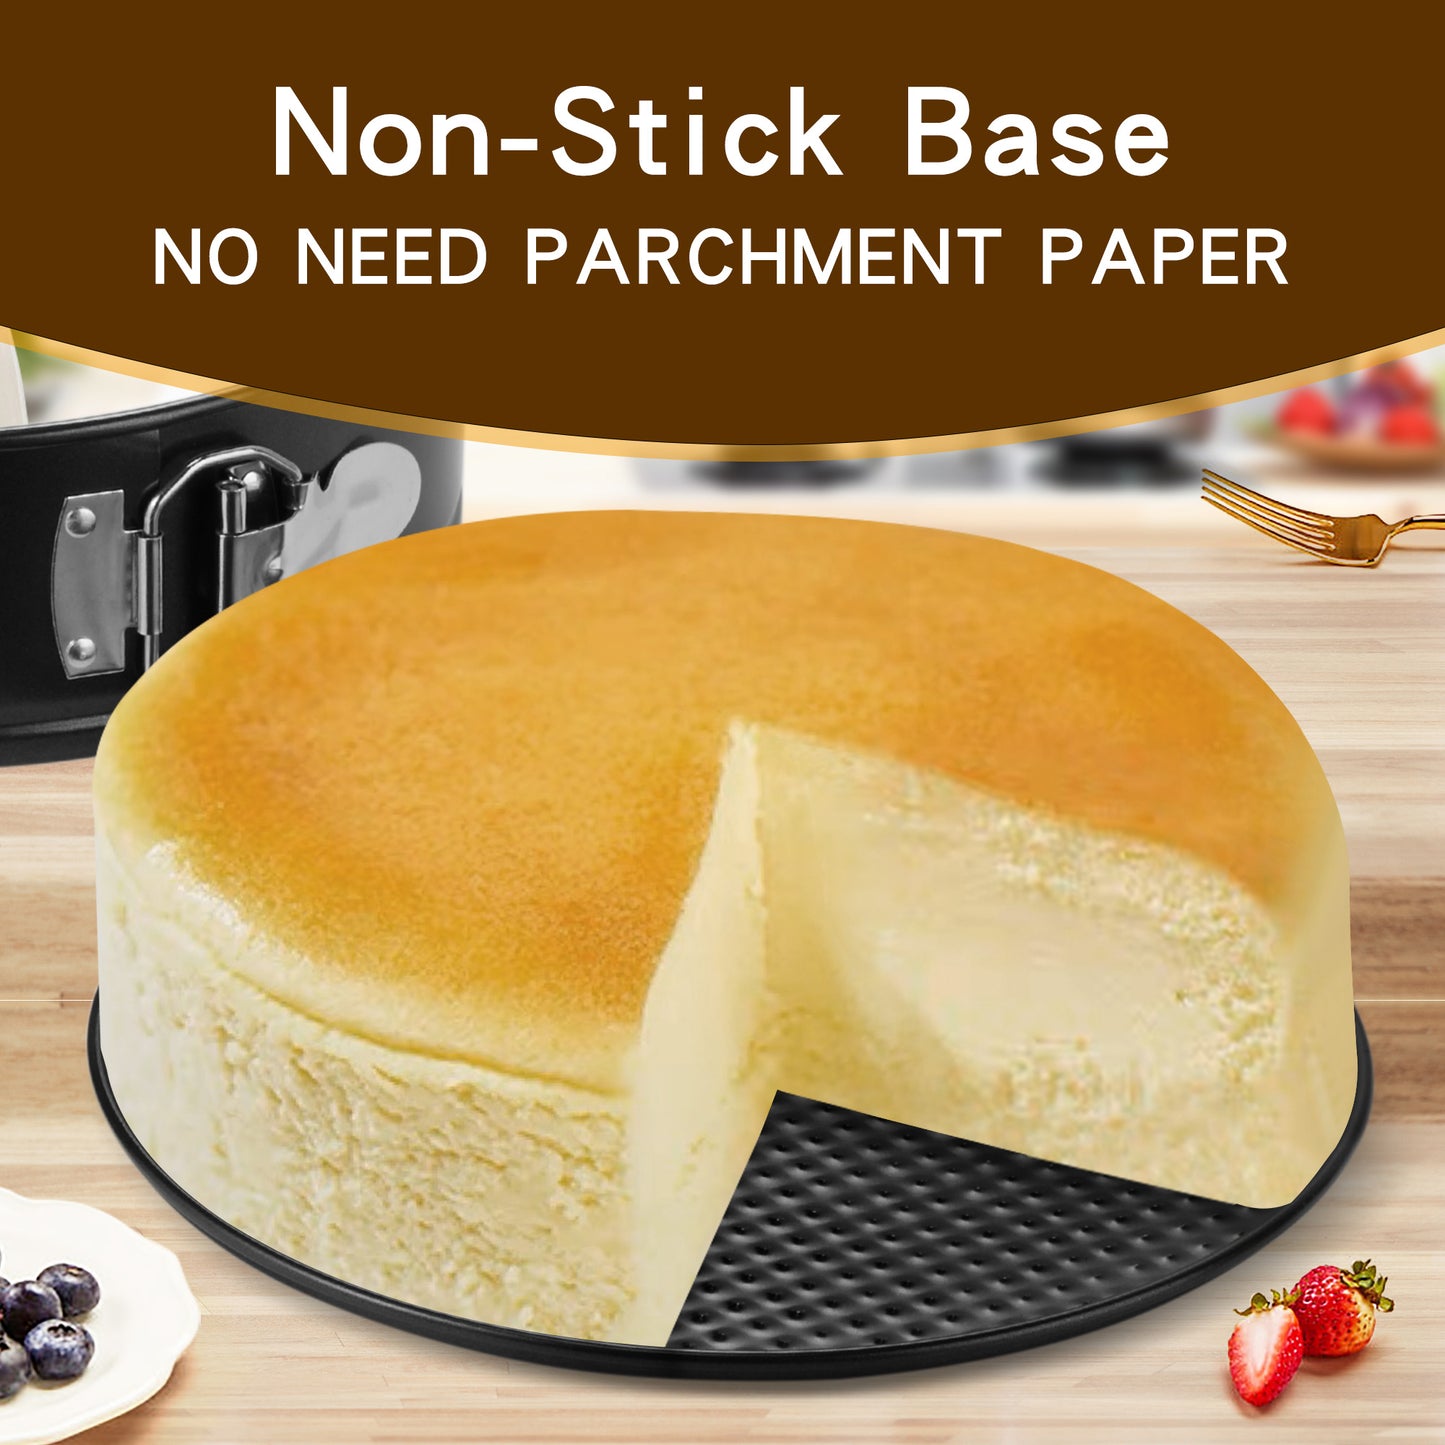 isheTao 9 inch Cake Pan Set for Baking, Non-Stick Springform Pan, Round Cake Pan, Cheesecake Pan, Leak-Proof Cake Baking Pans with Removable Bottom